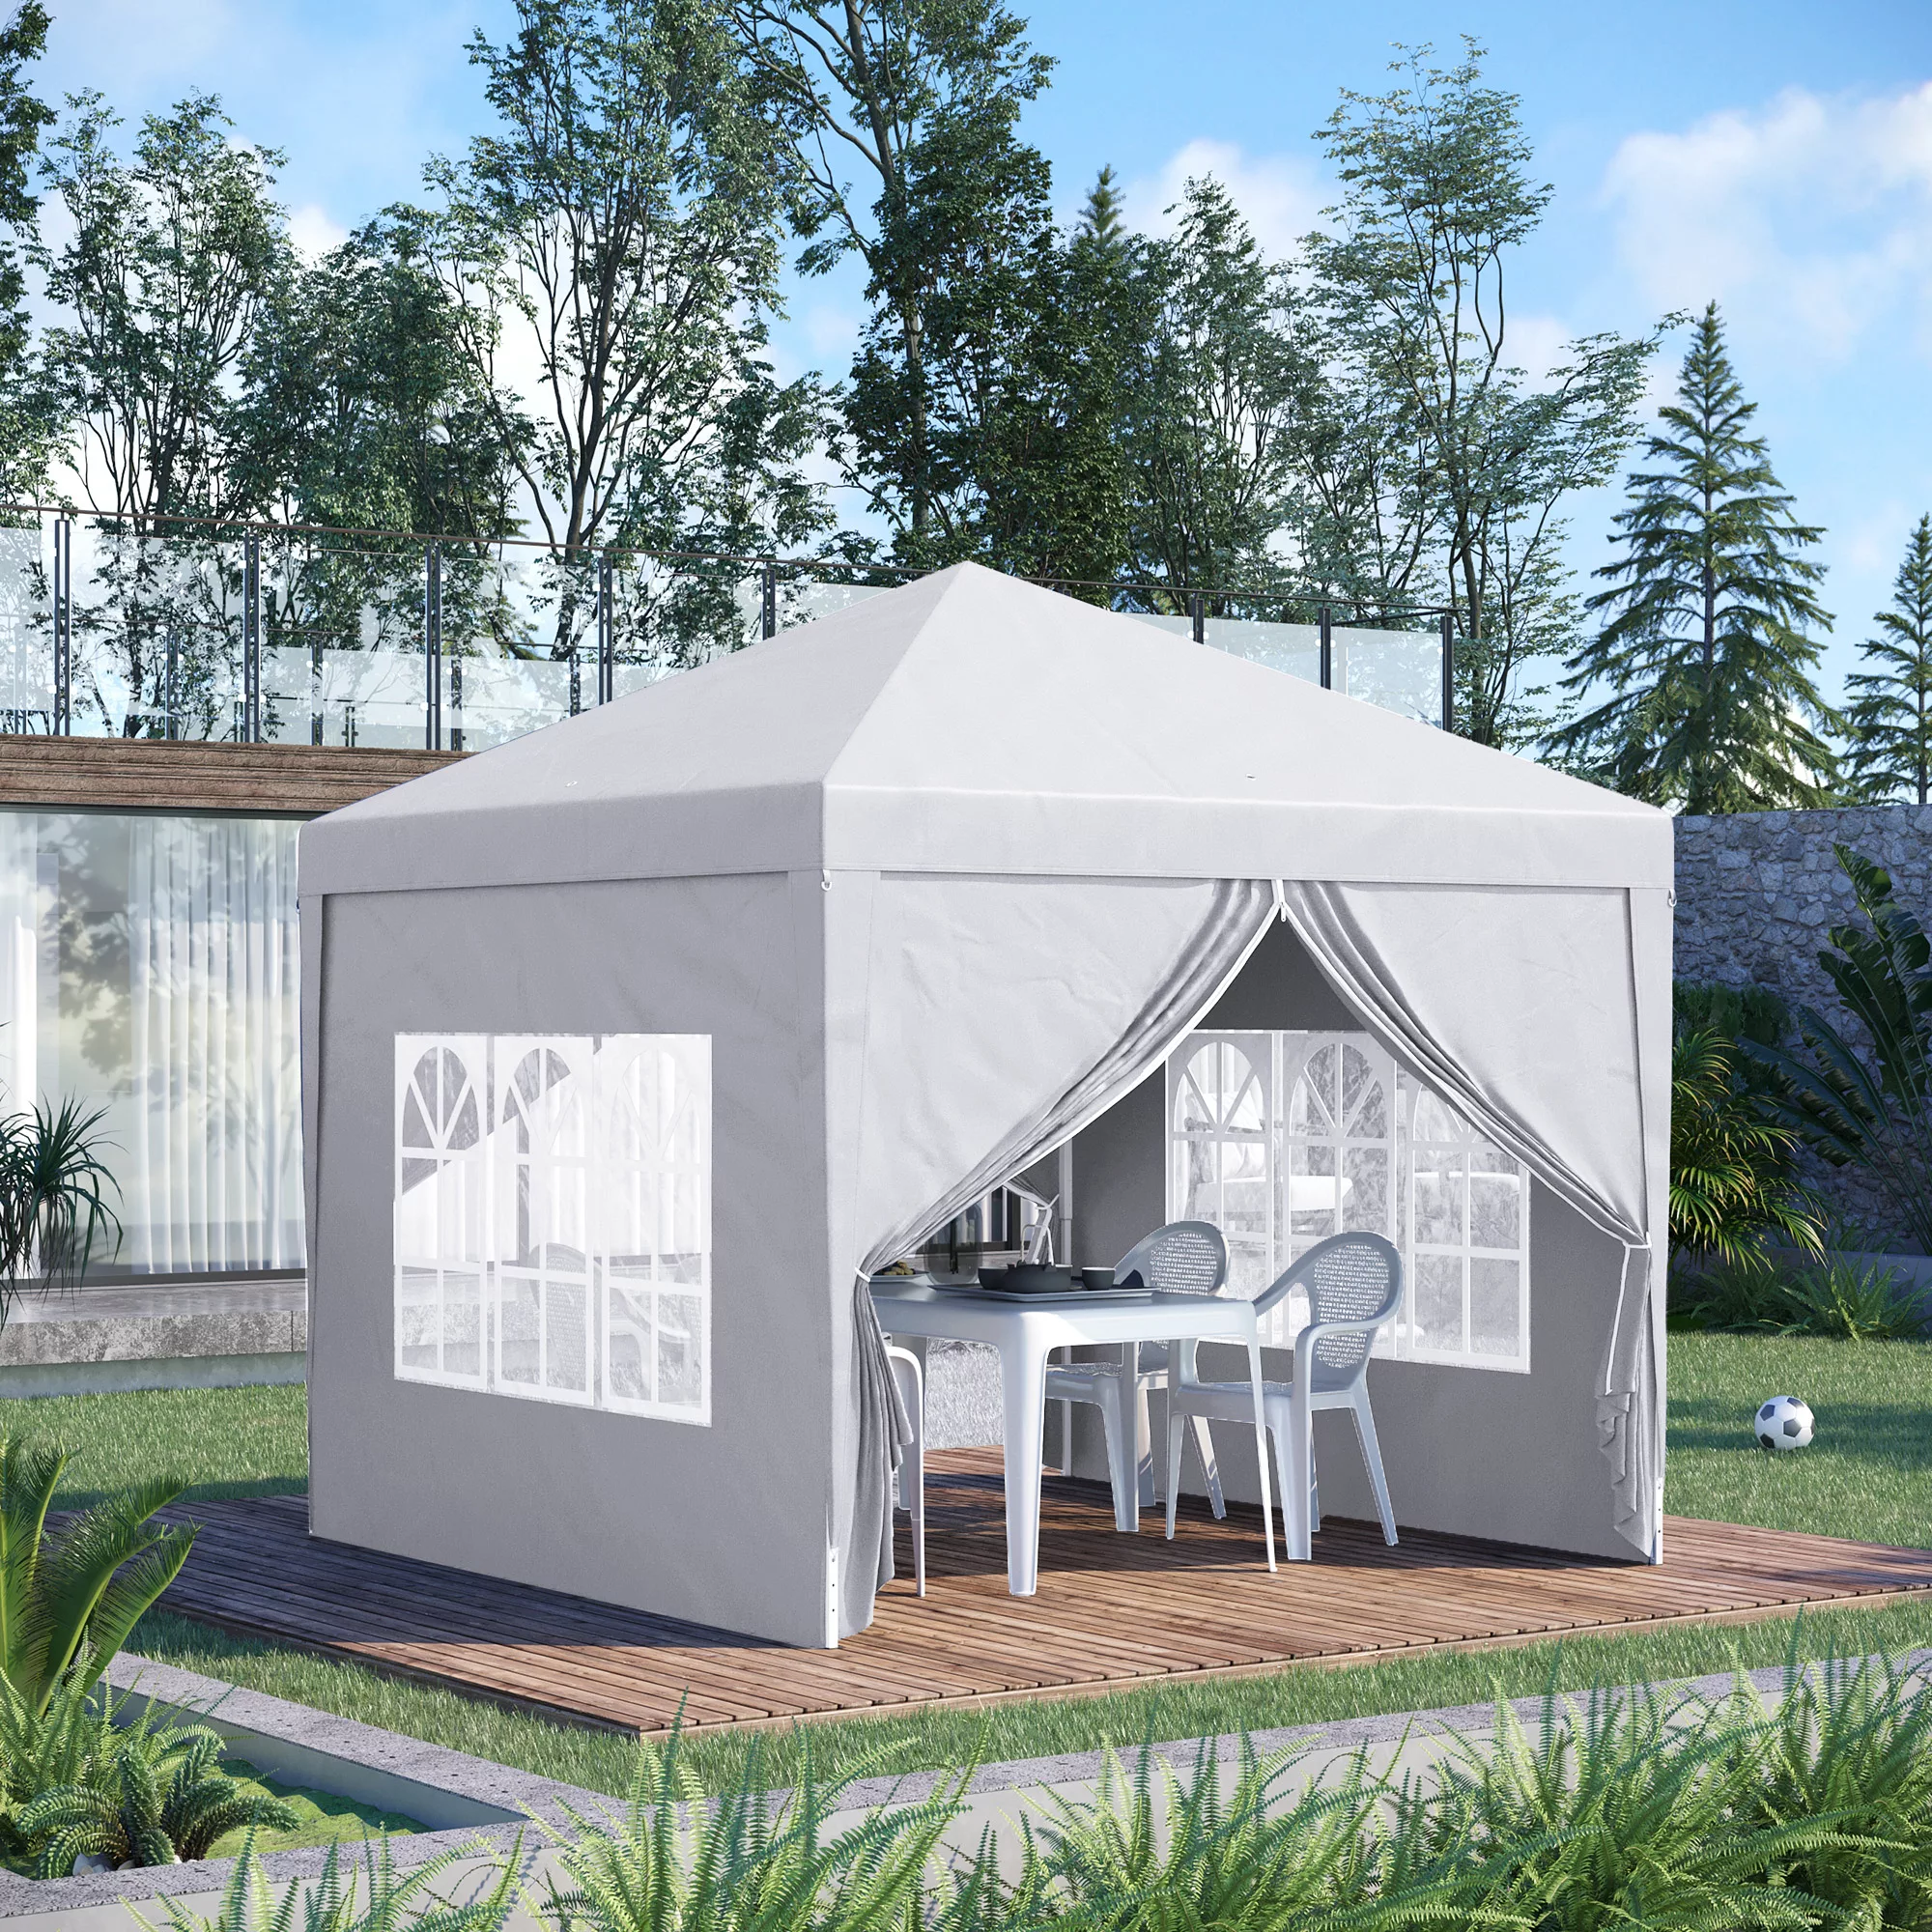 3x3m  Pavillon mit 4 Seitenwänden & Fenster, UV-Schutz, inkl. Tragetasche, günstig online kaufen